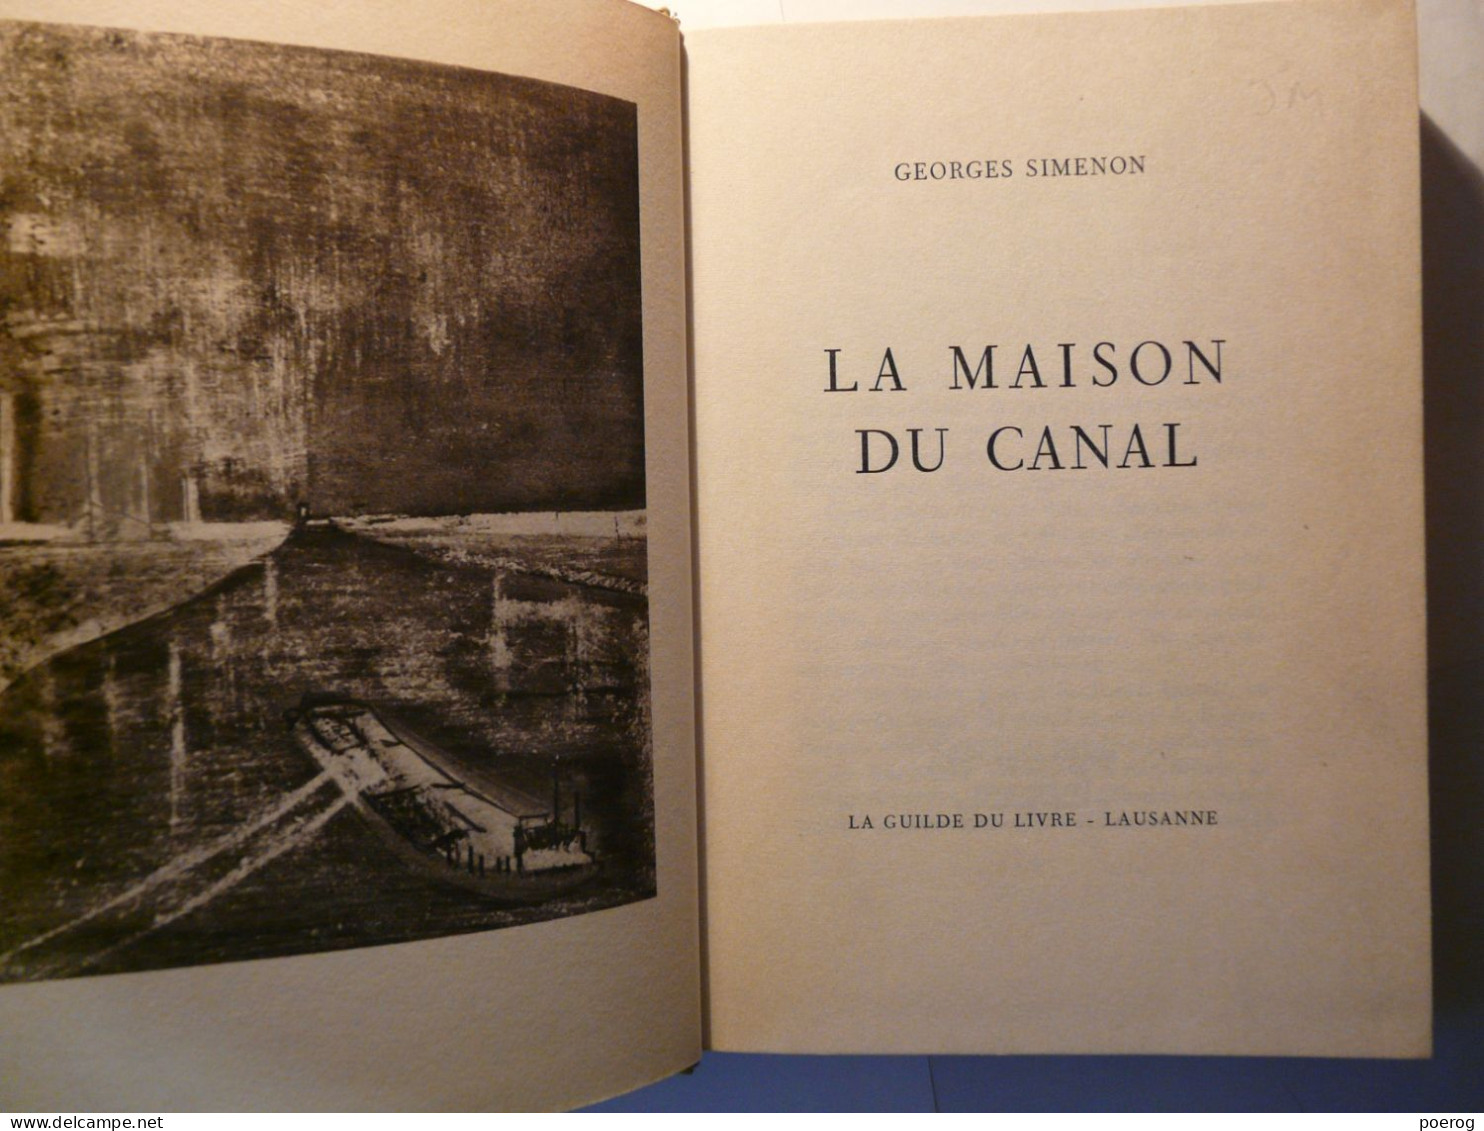 GEORGES SIMENON - LA MAISON DU CANAL - NUMEROTE - LA GUILDE DU LIVRE LAUSANNE - COUVERTURE RIGIDE - Belgische Autoren